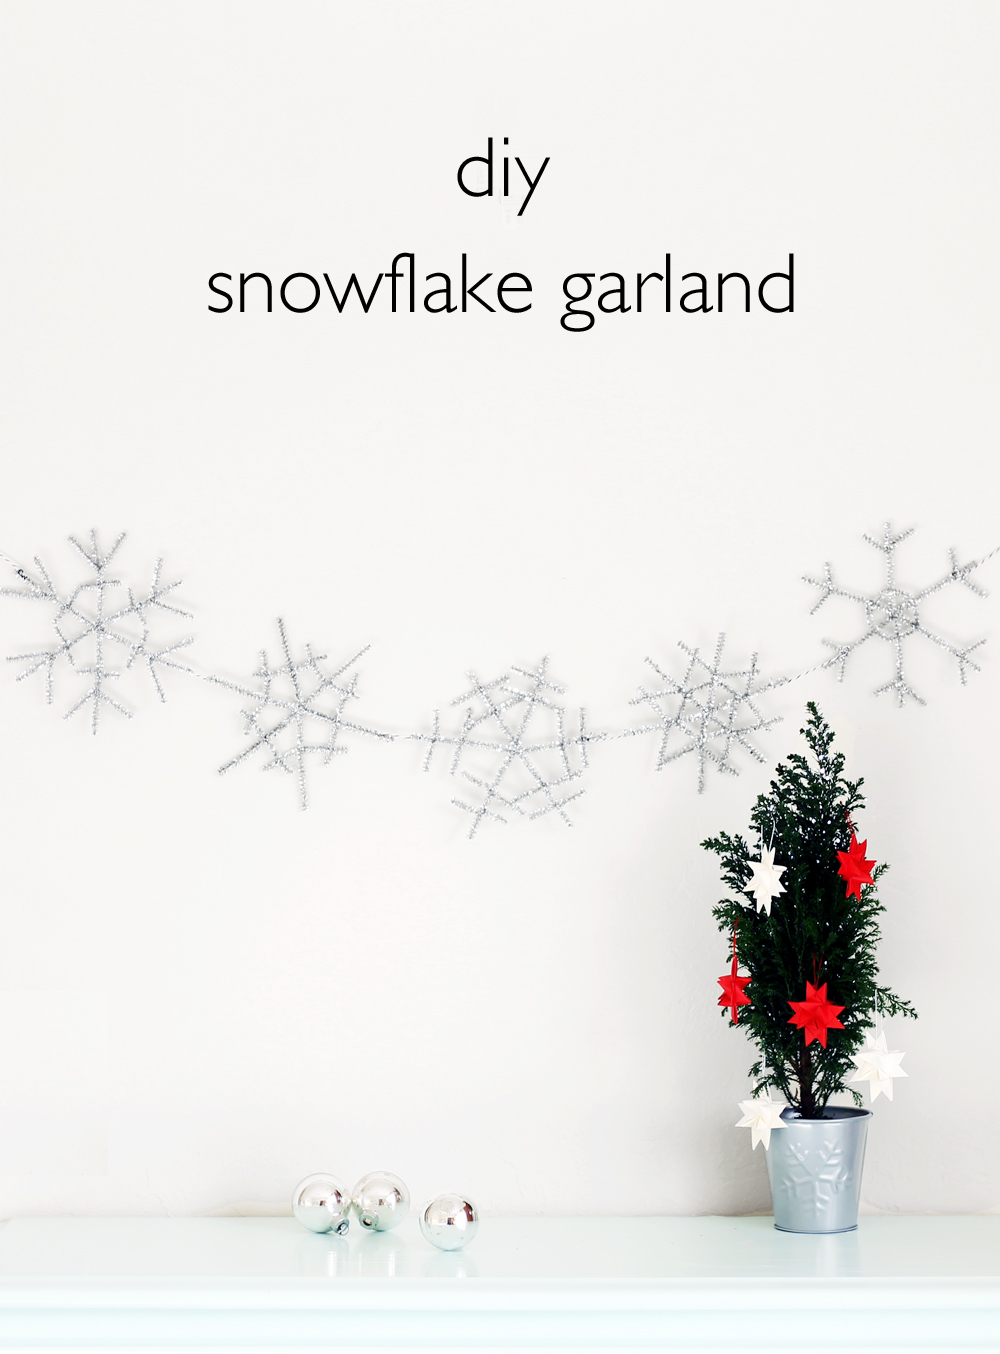 diy snowflake garland | www.vitaminihandmade.com